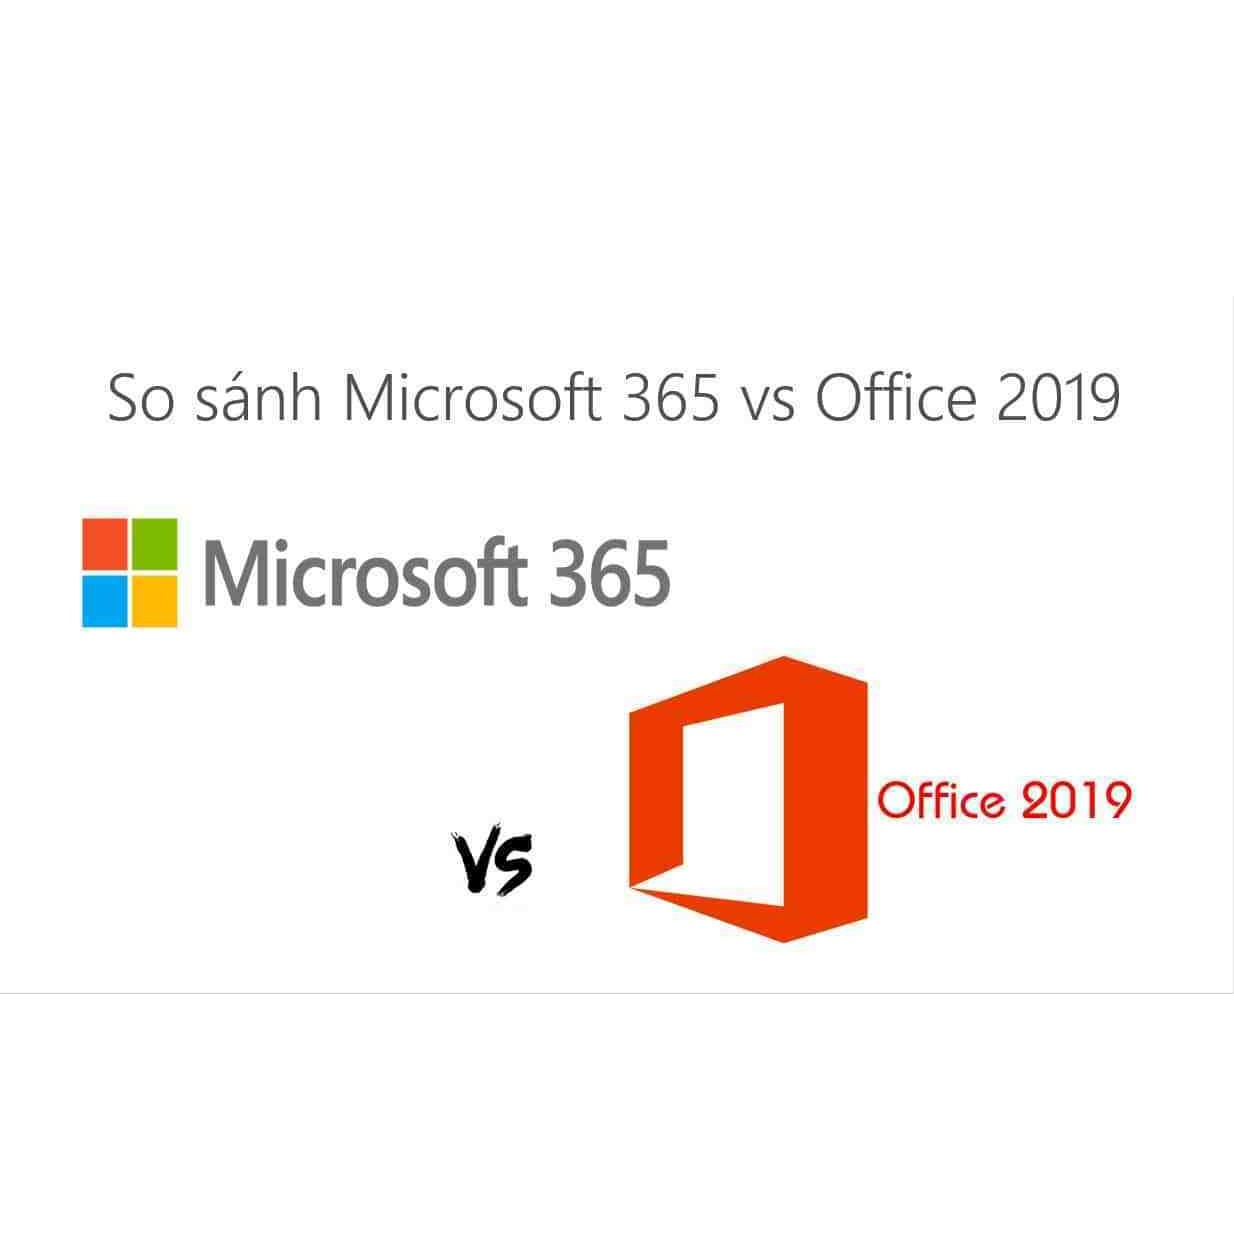 So sanh Microsoft 365 va Office 2019